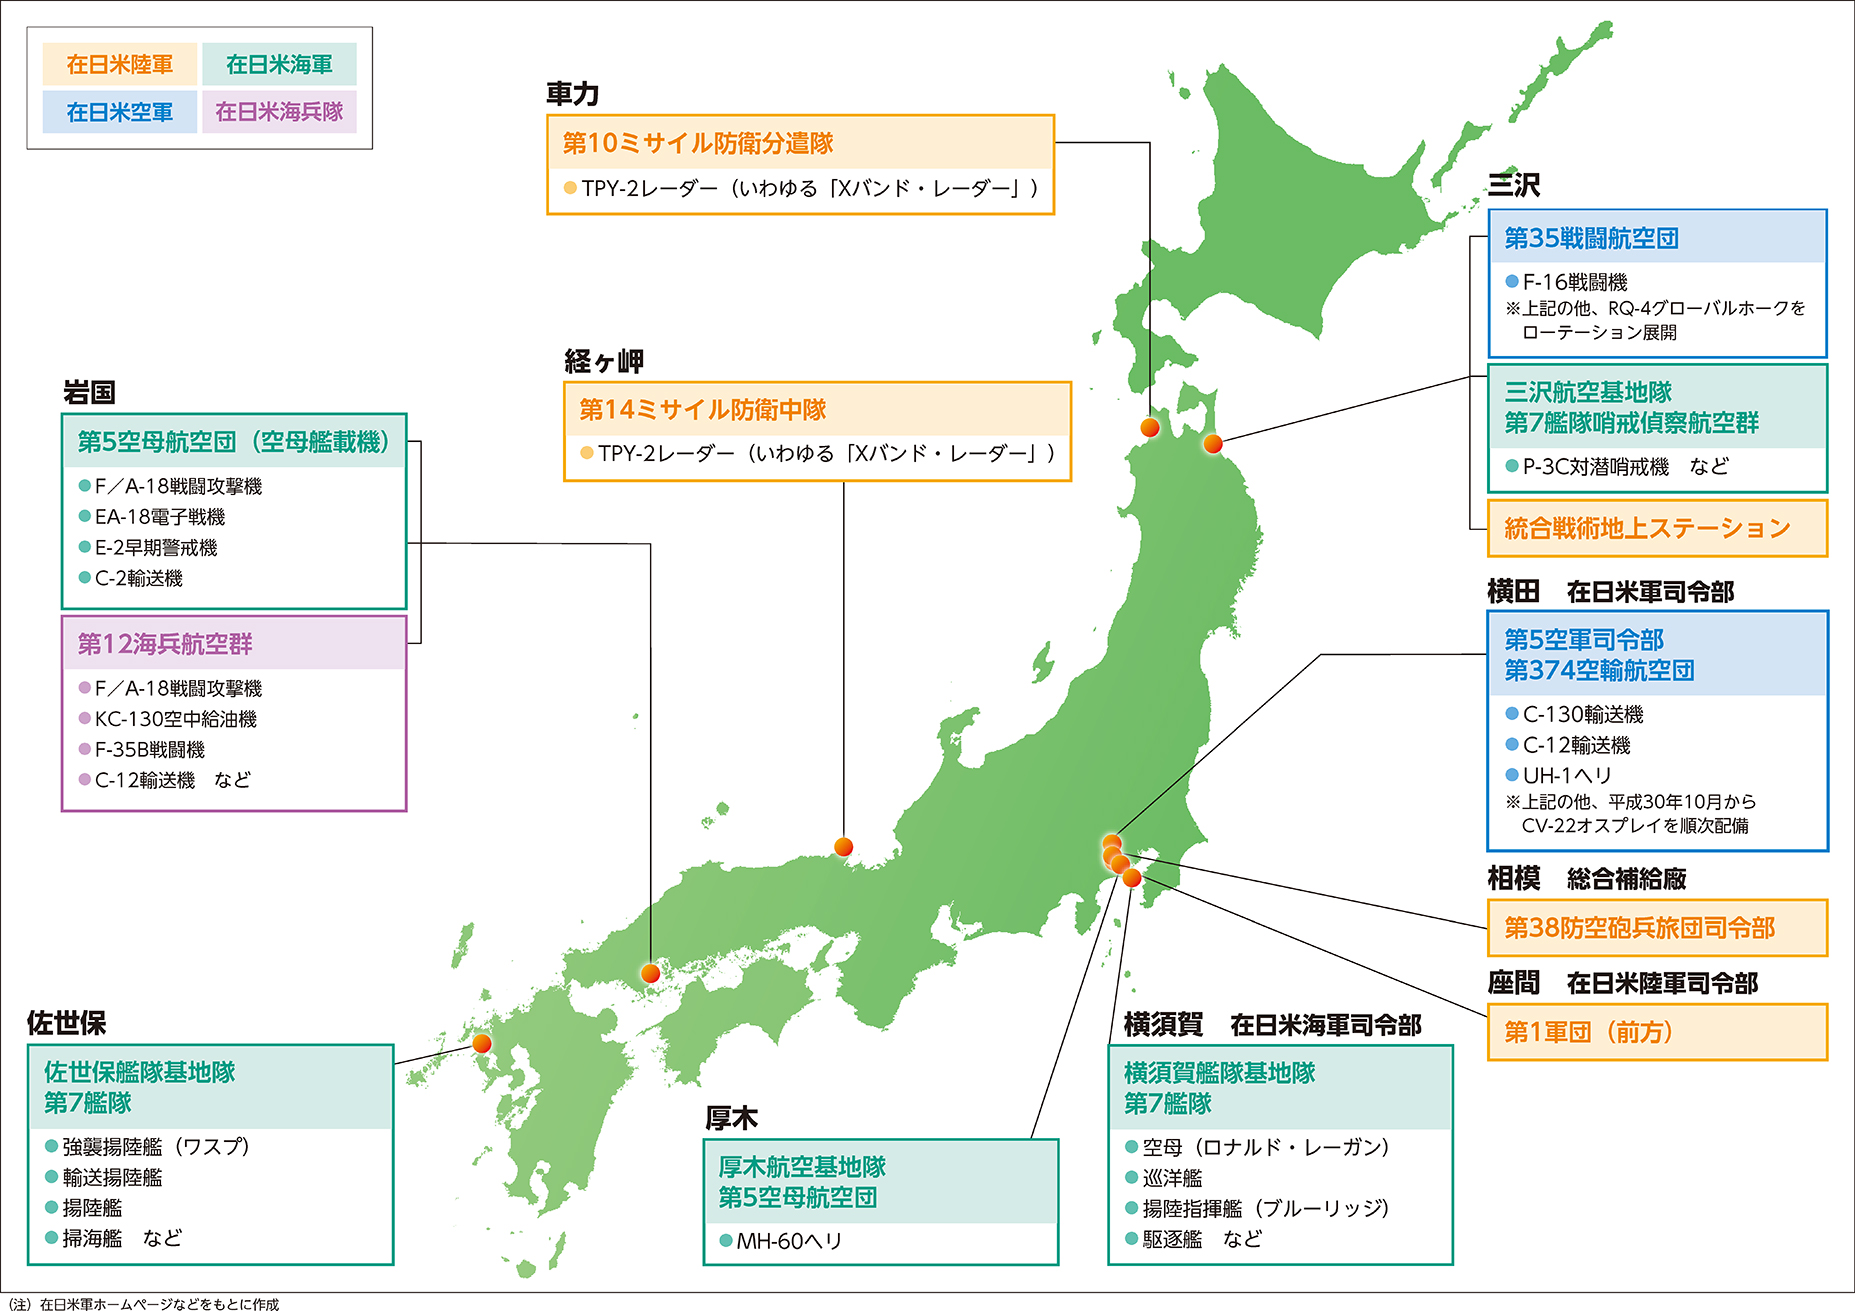 沖縄を除く地域における在日米軍主要部隊などの配置図（平成30年度末現在）